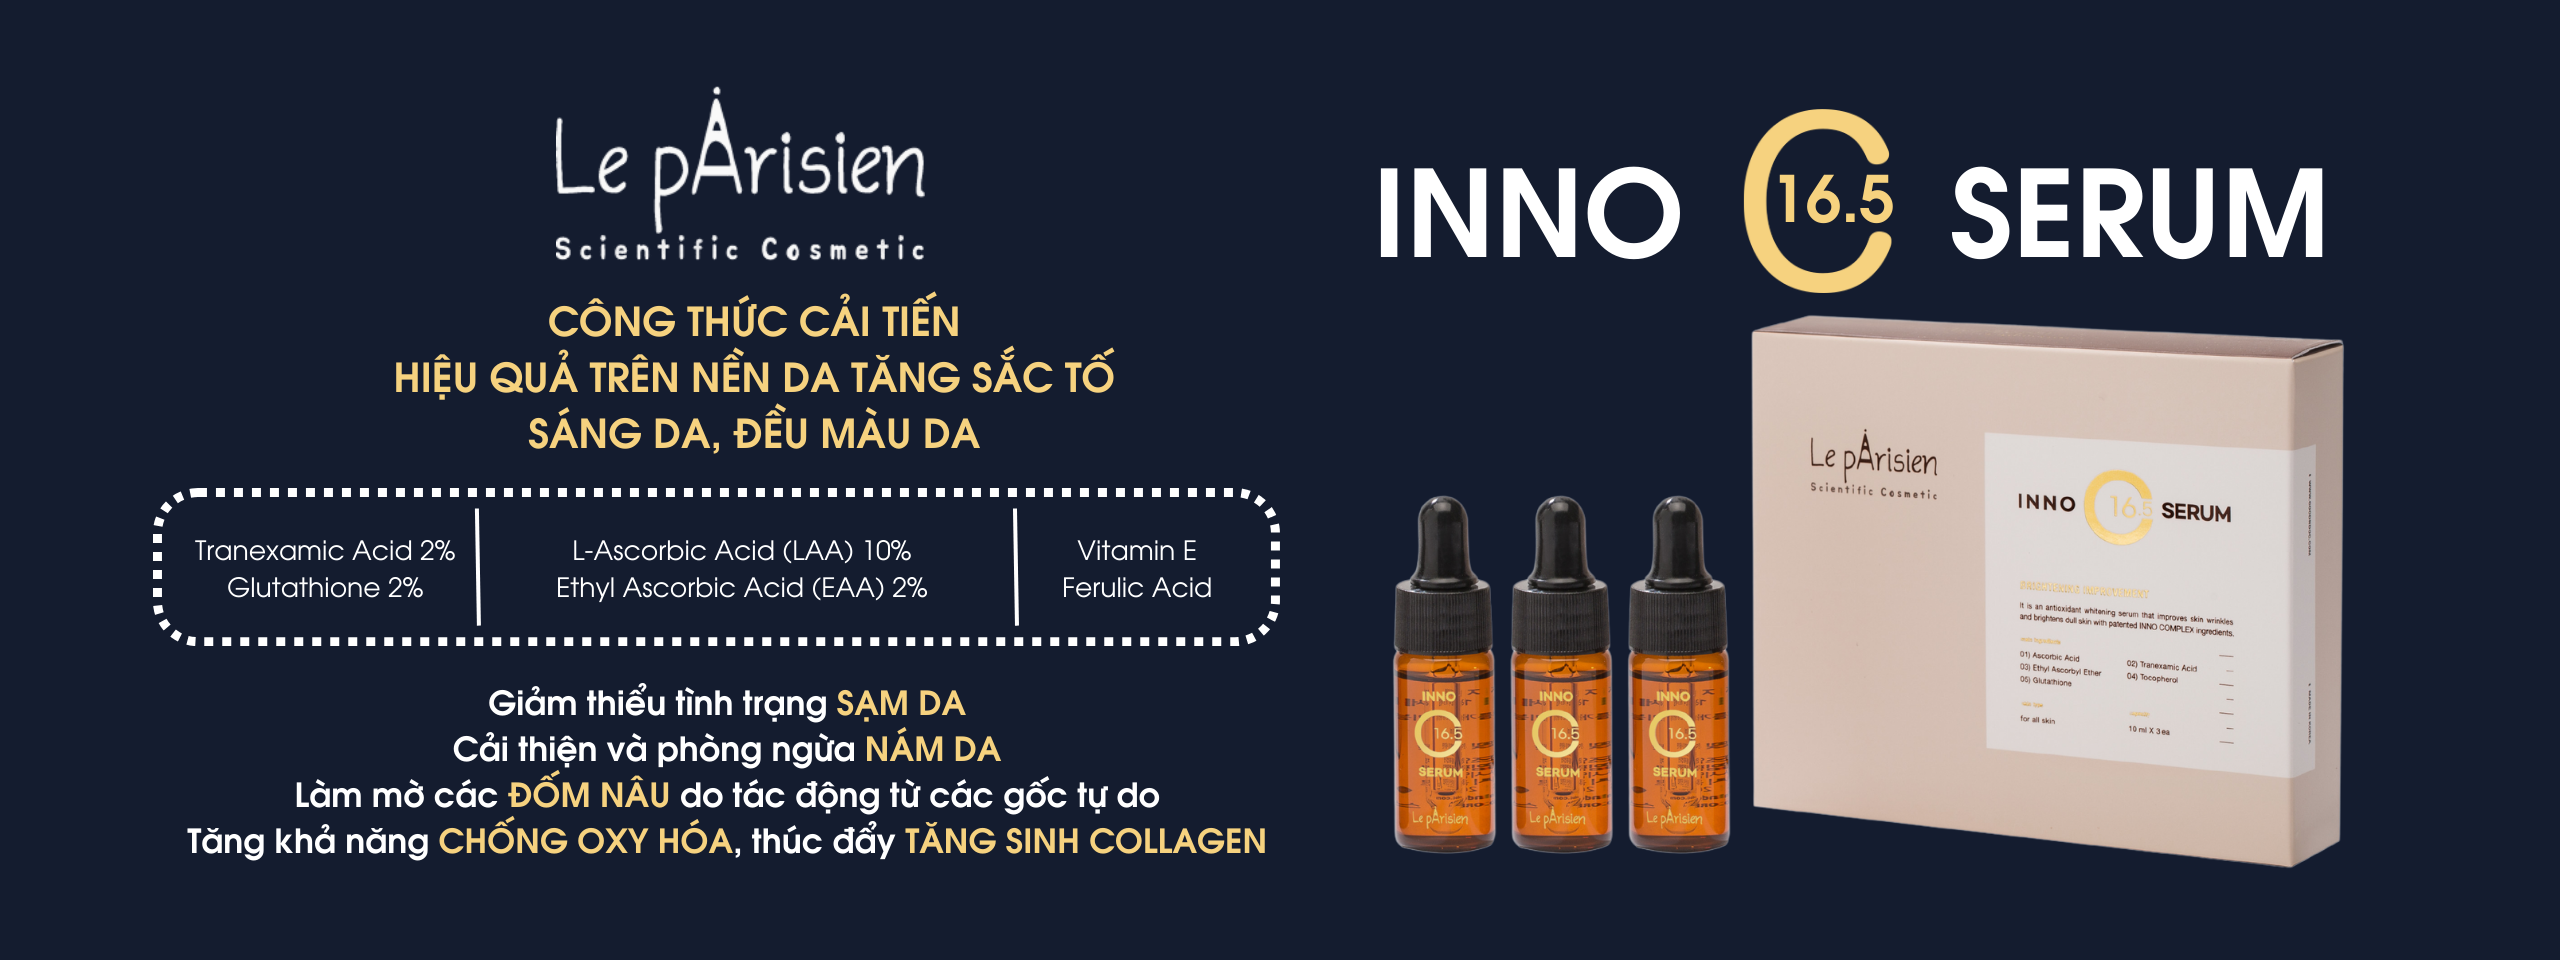 Le pArisien Inno C16.5 serum